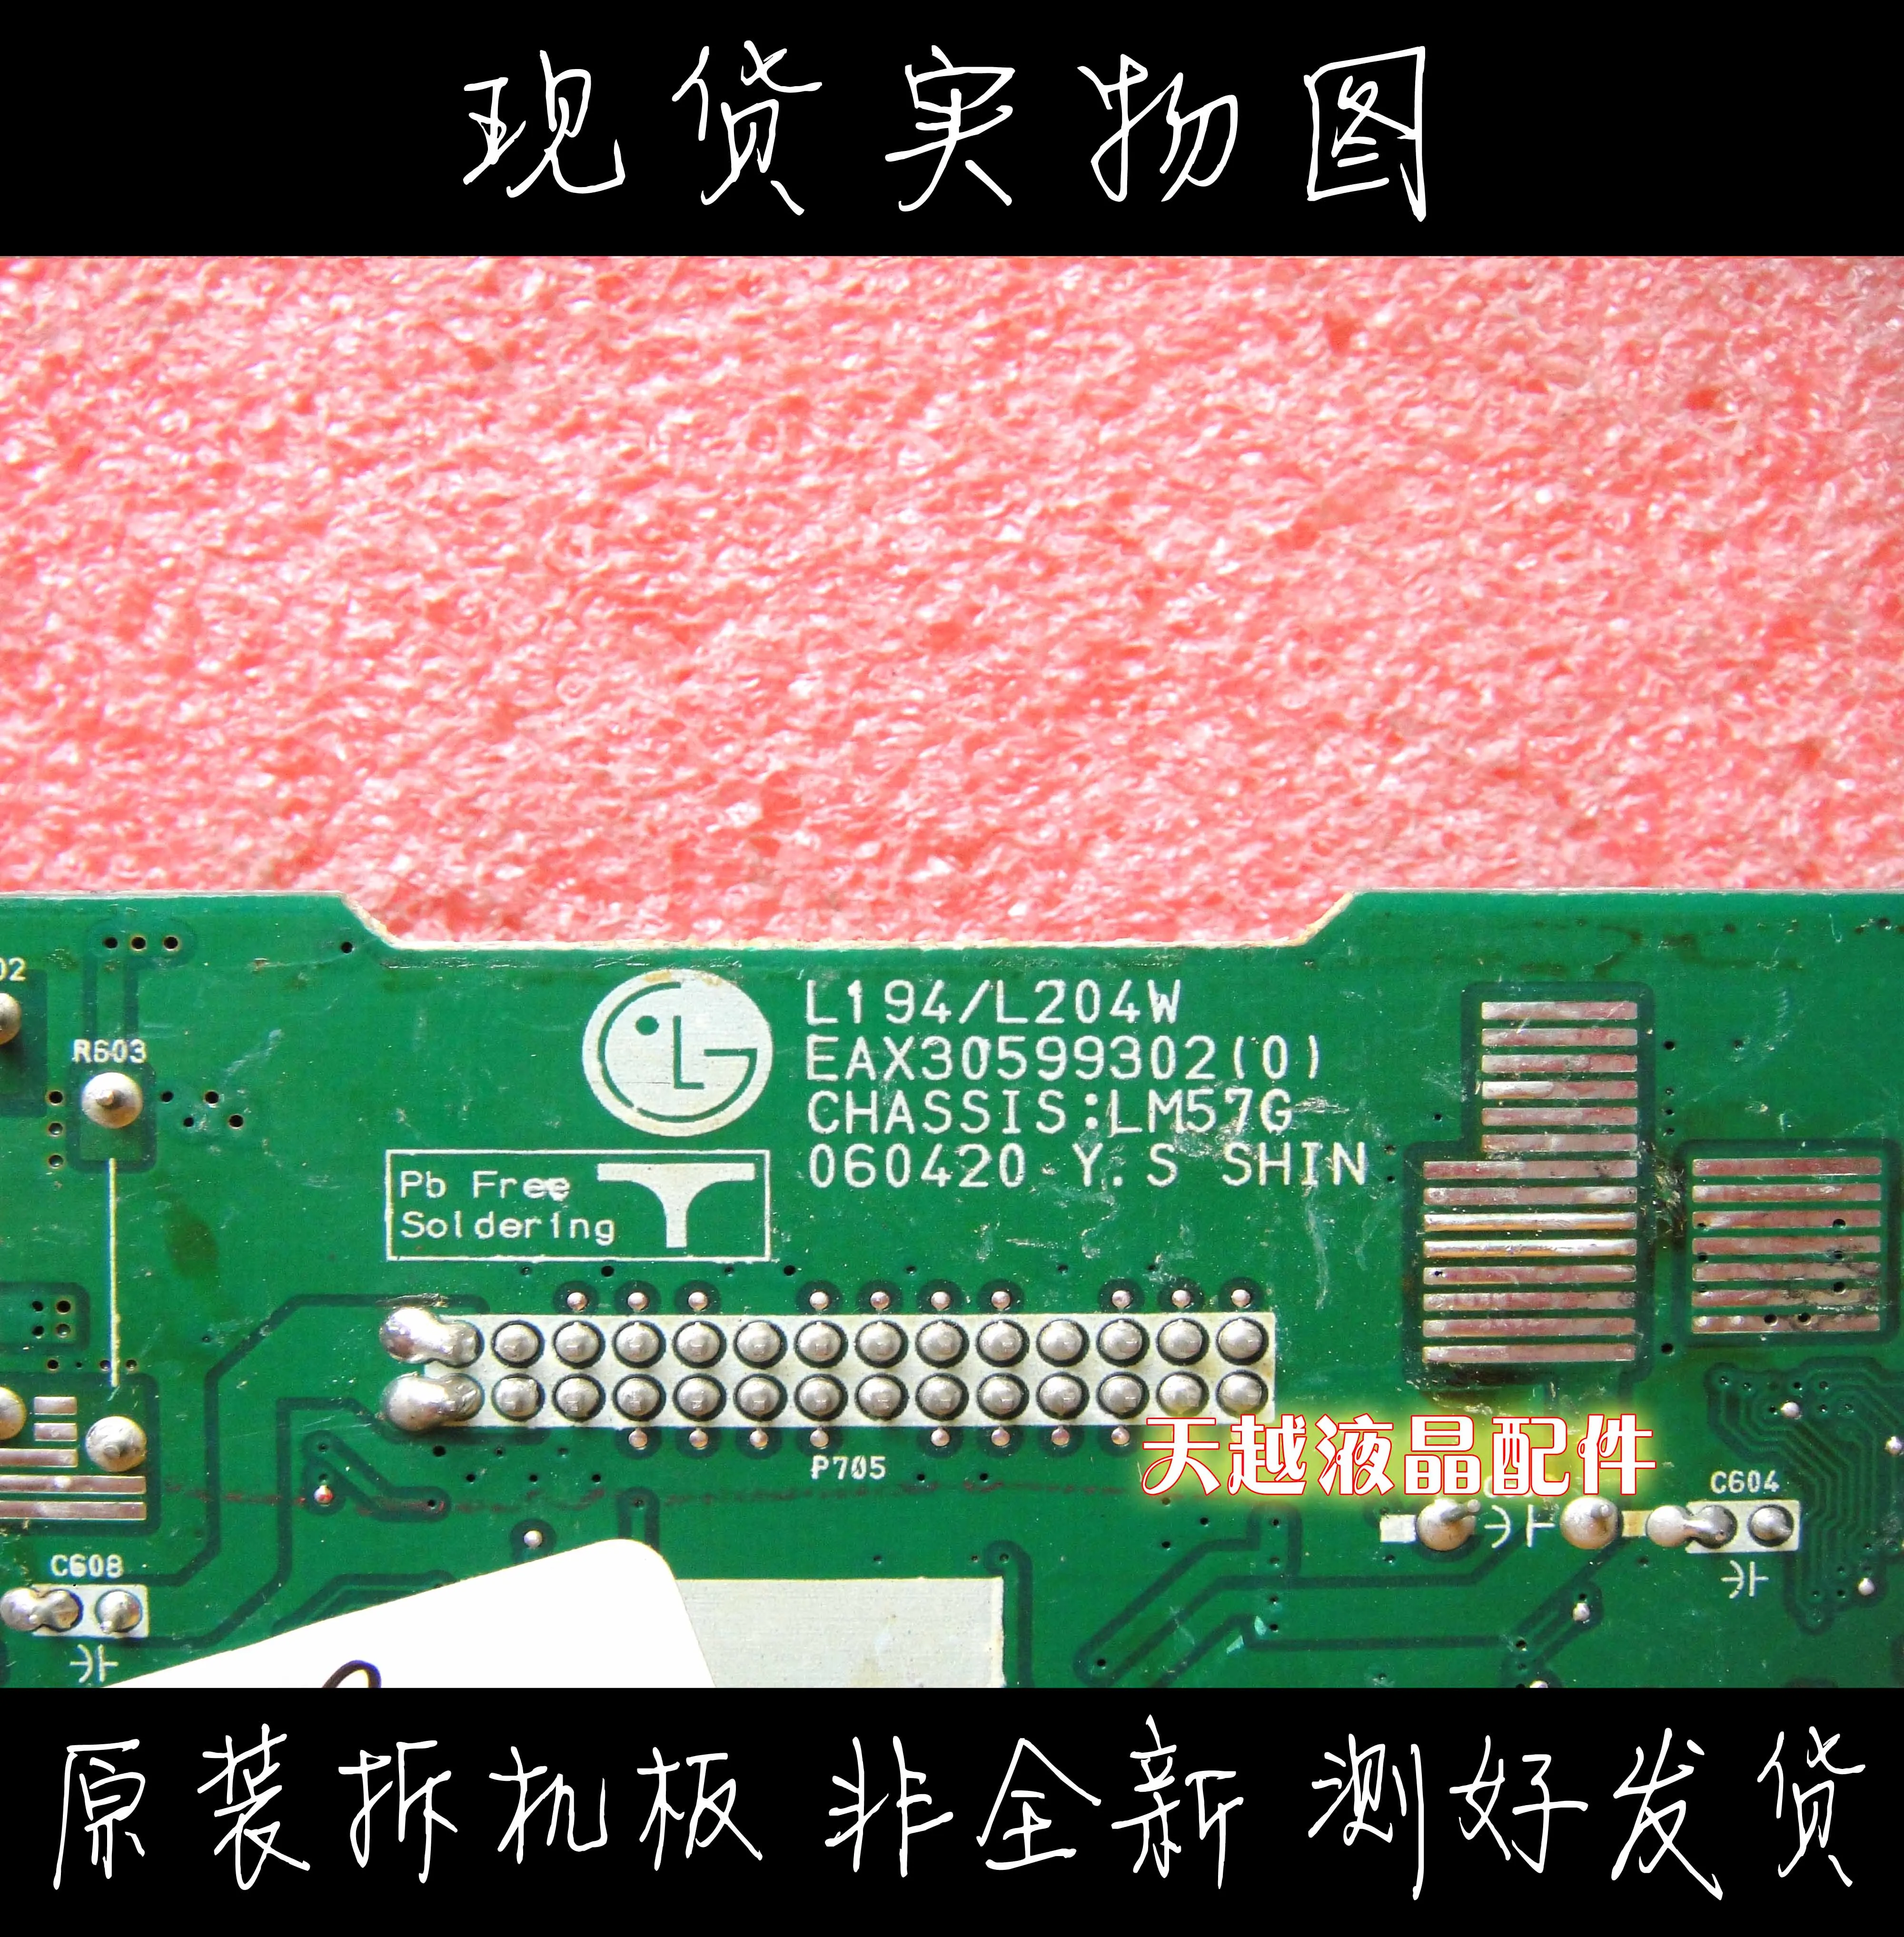 1 PC Used Tested LG L204WT LM57G EAX30599302 Board #Q4977 ZX 